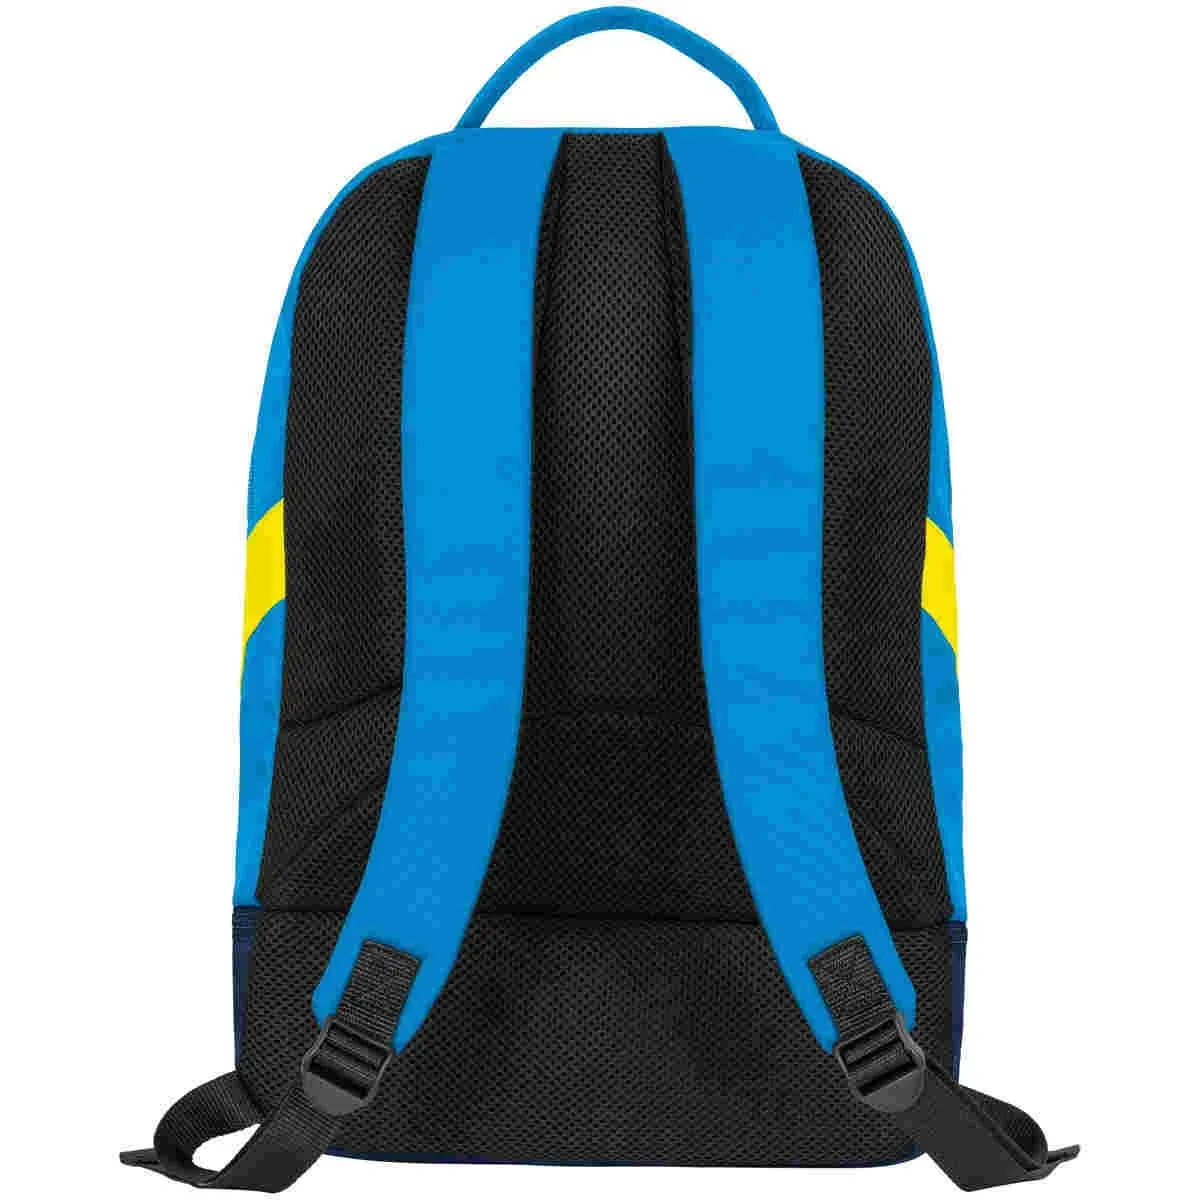 Jako backpack Iconic JAKO blue/navy/neon yellow